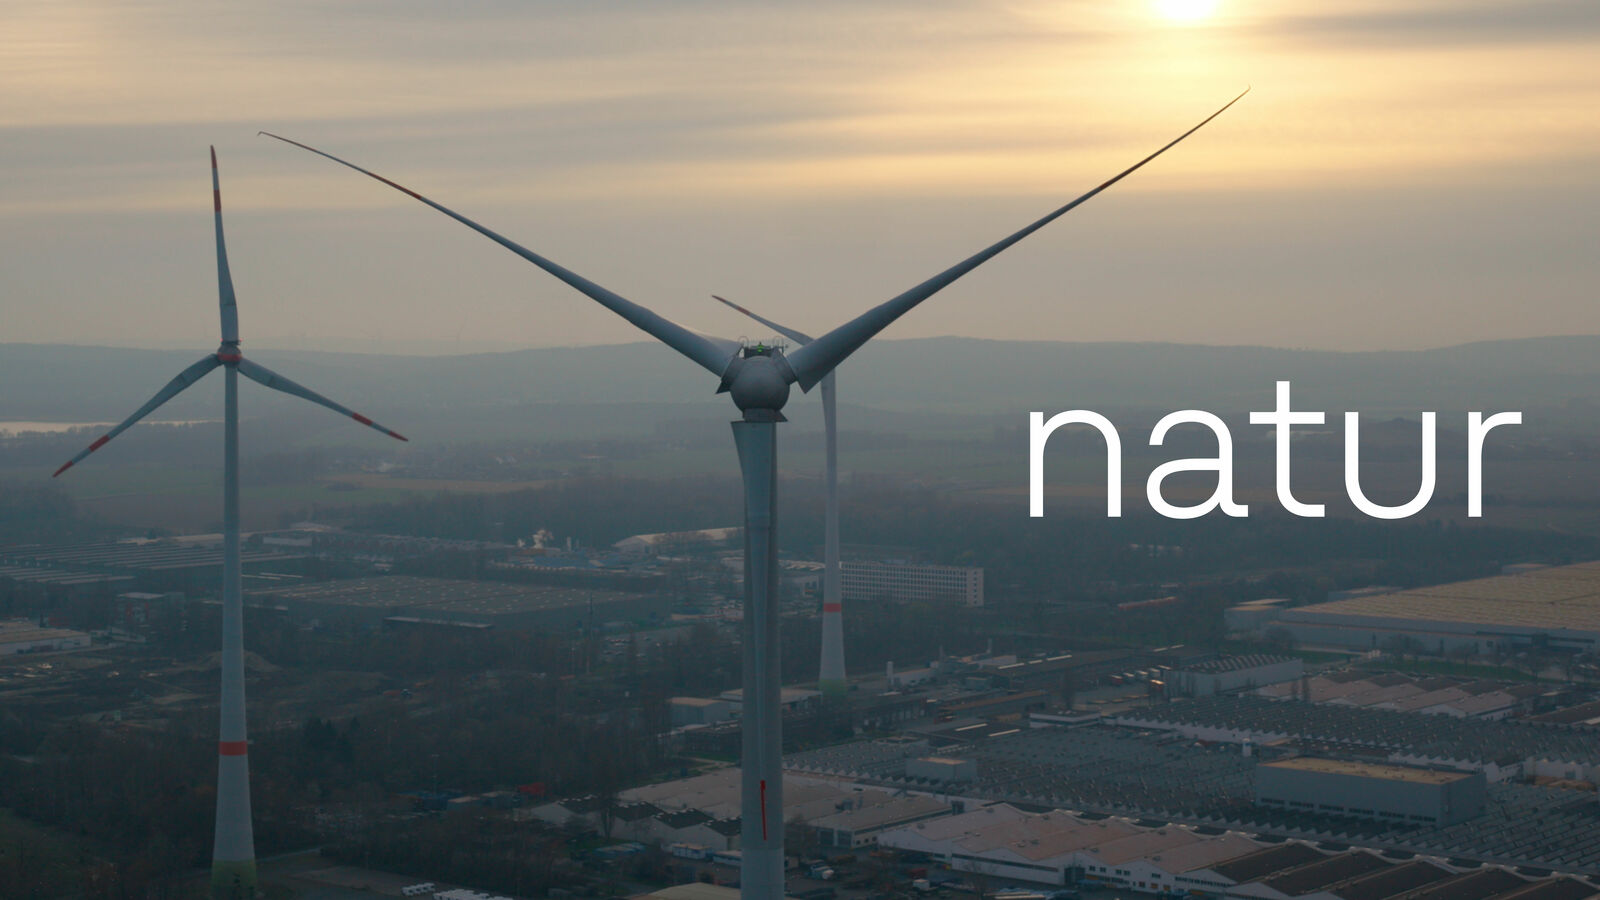 Windkraftanlagen bei Sonnenuntergang, darüber steht das Wort "natur".